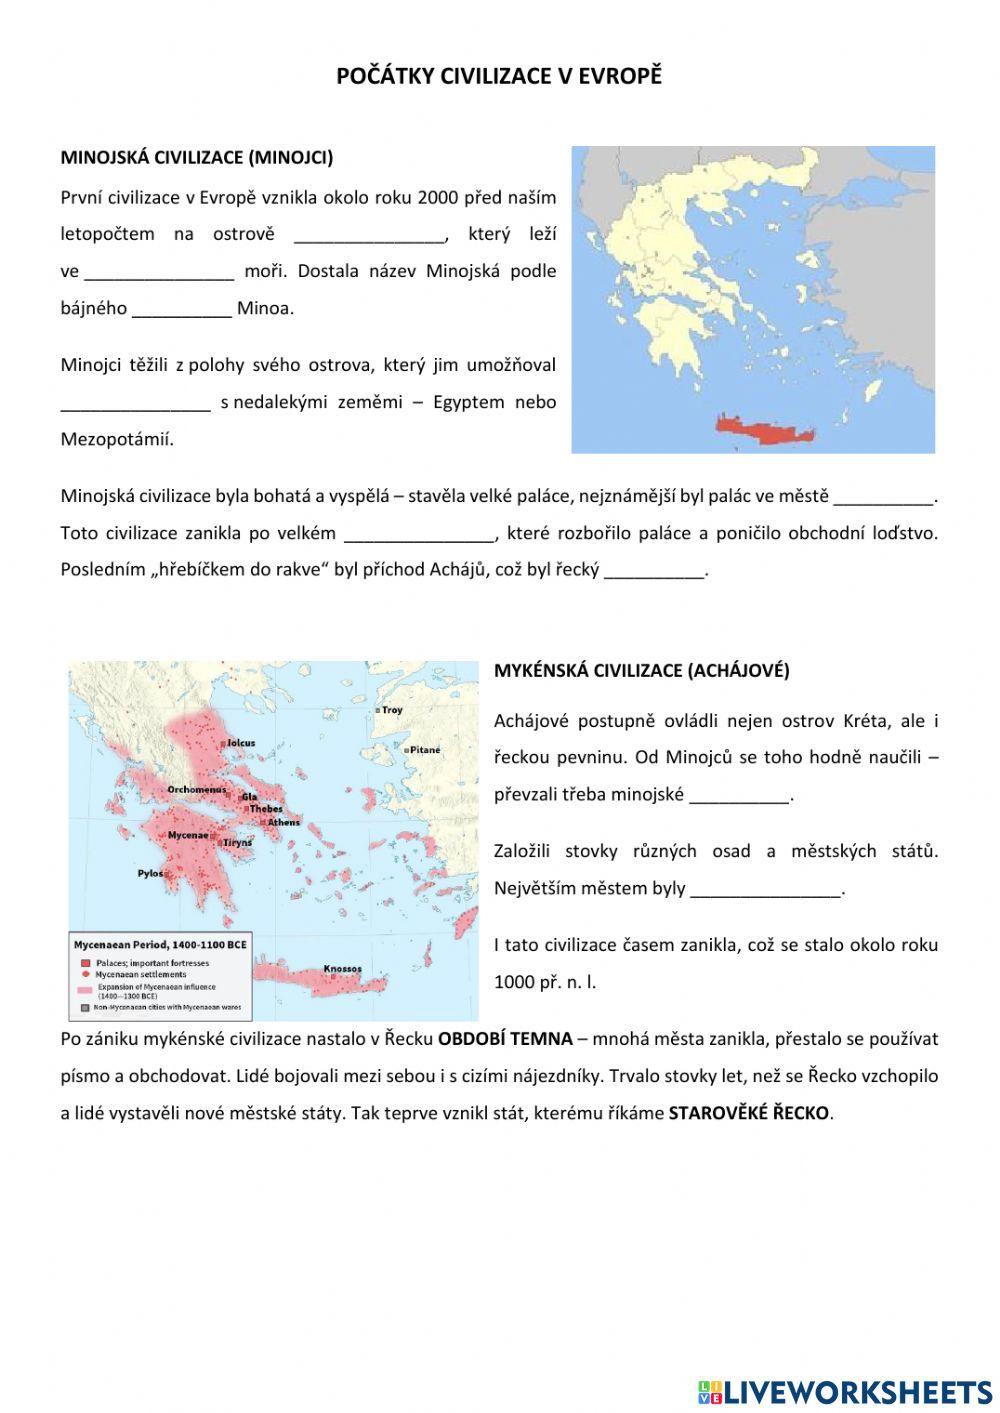 Počátky civilizace v Evropě (starověké Řecko)